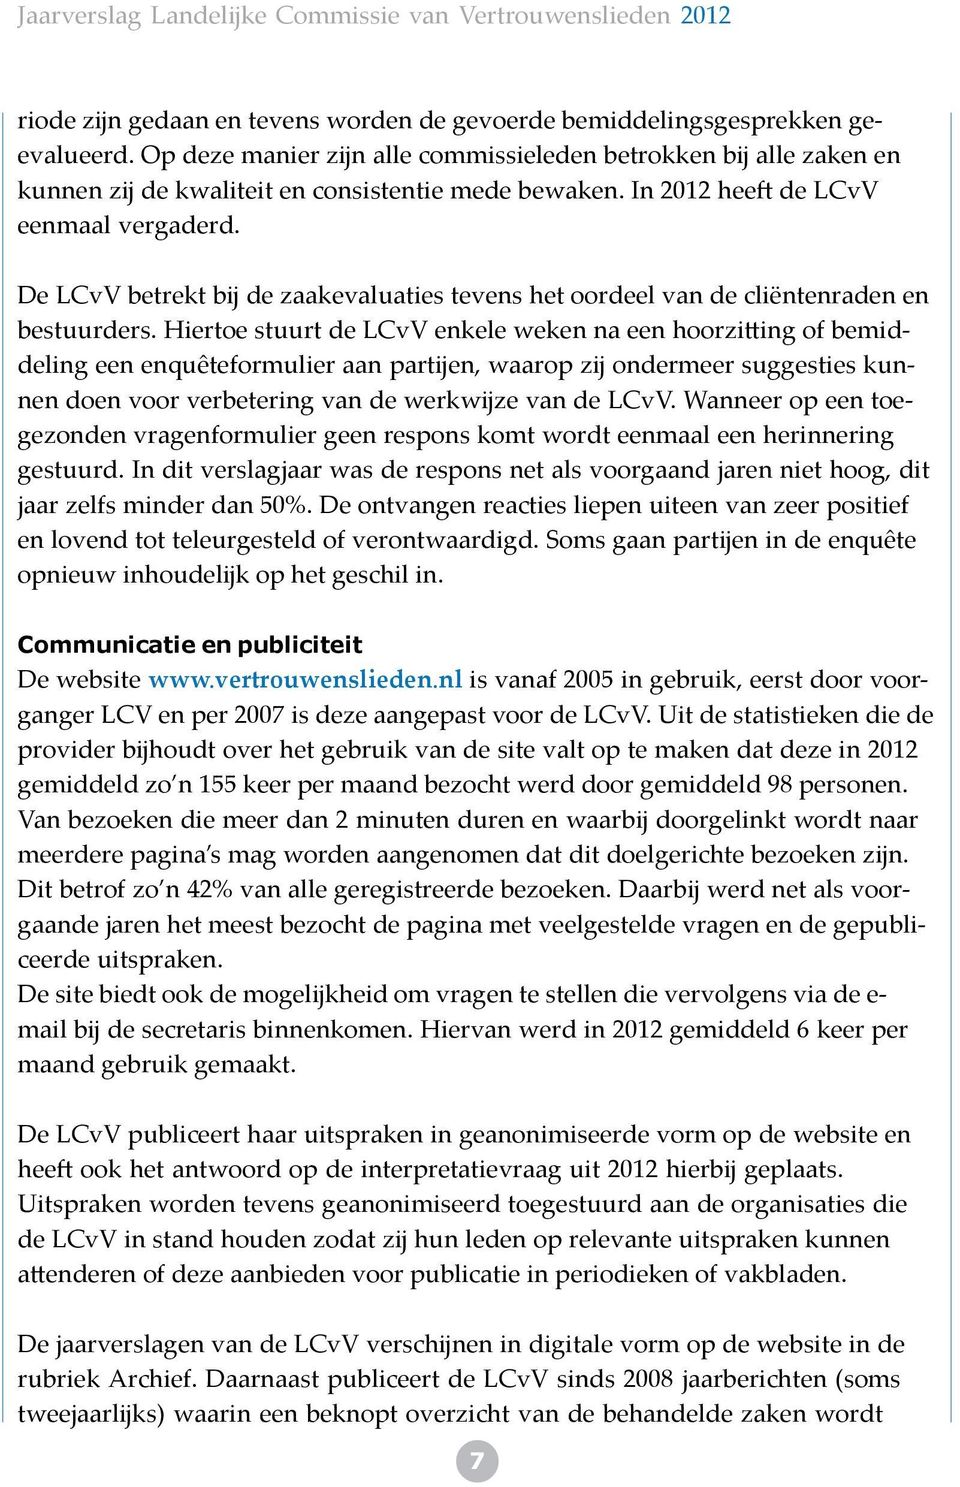 De LCvV betrekt b de zaakevaluaties tevens het oordeel van de cliëntenraden en bestuurders.